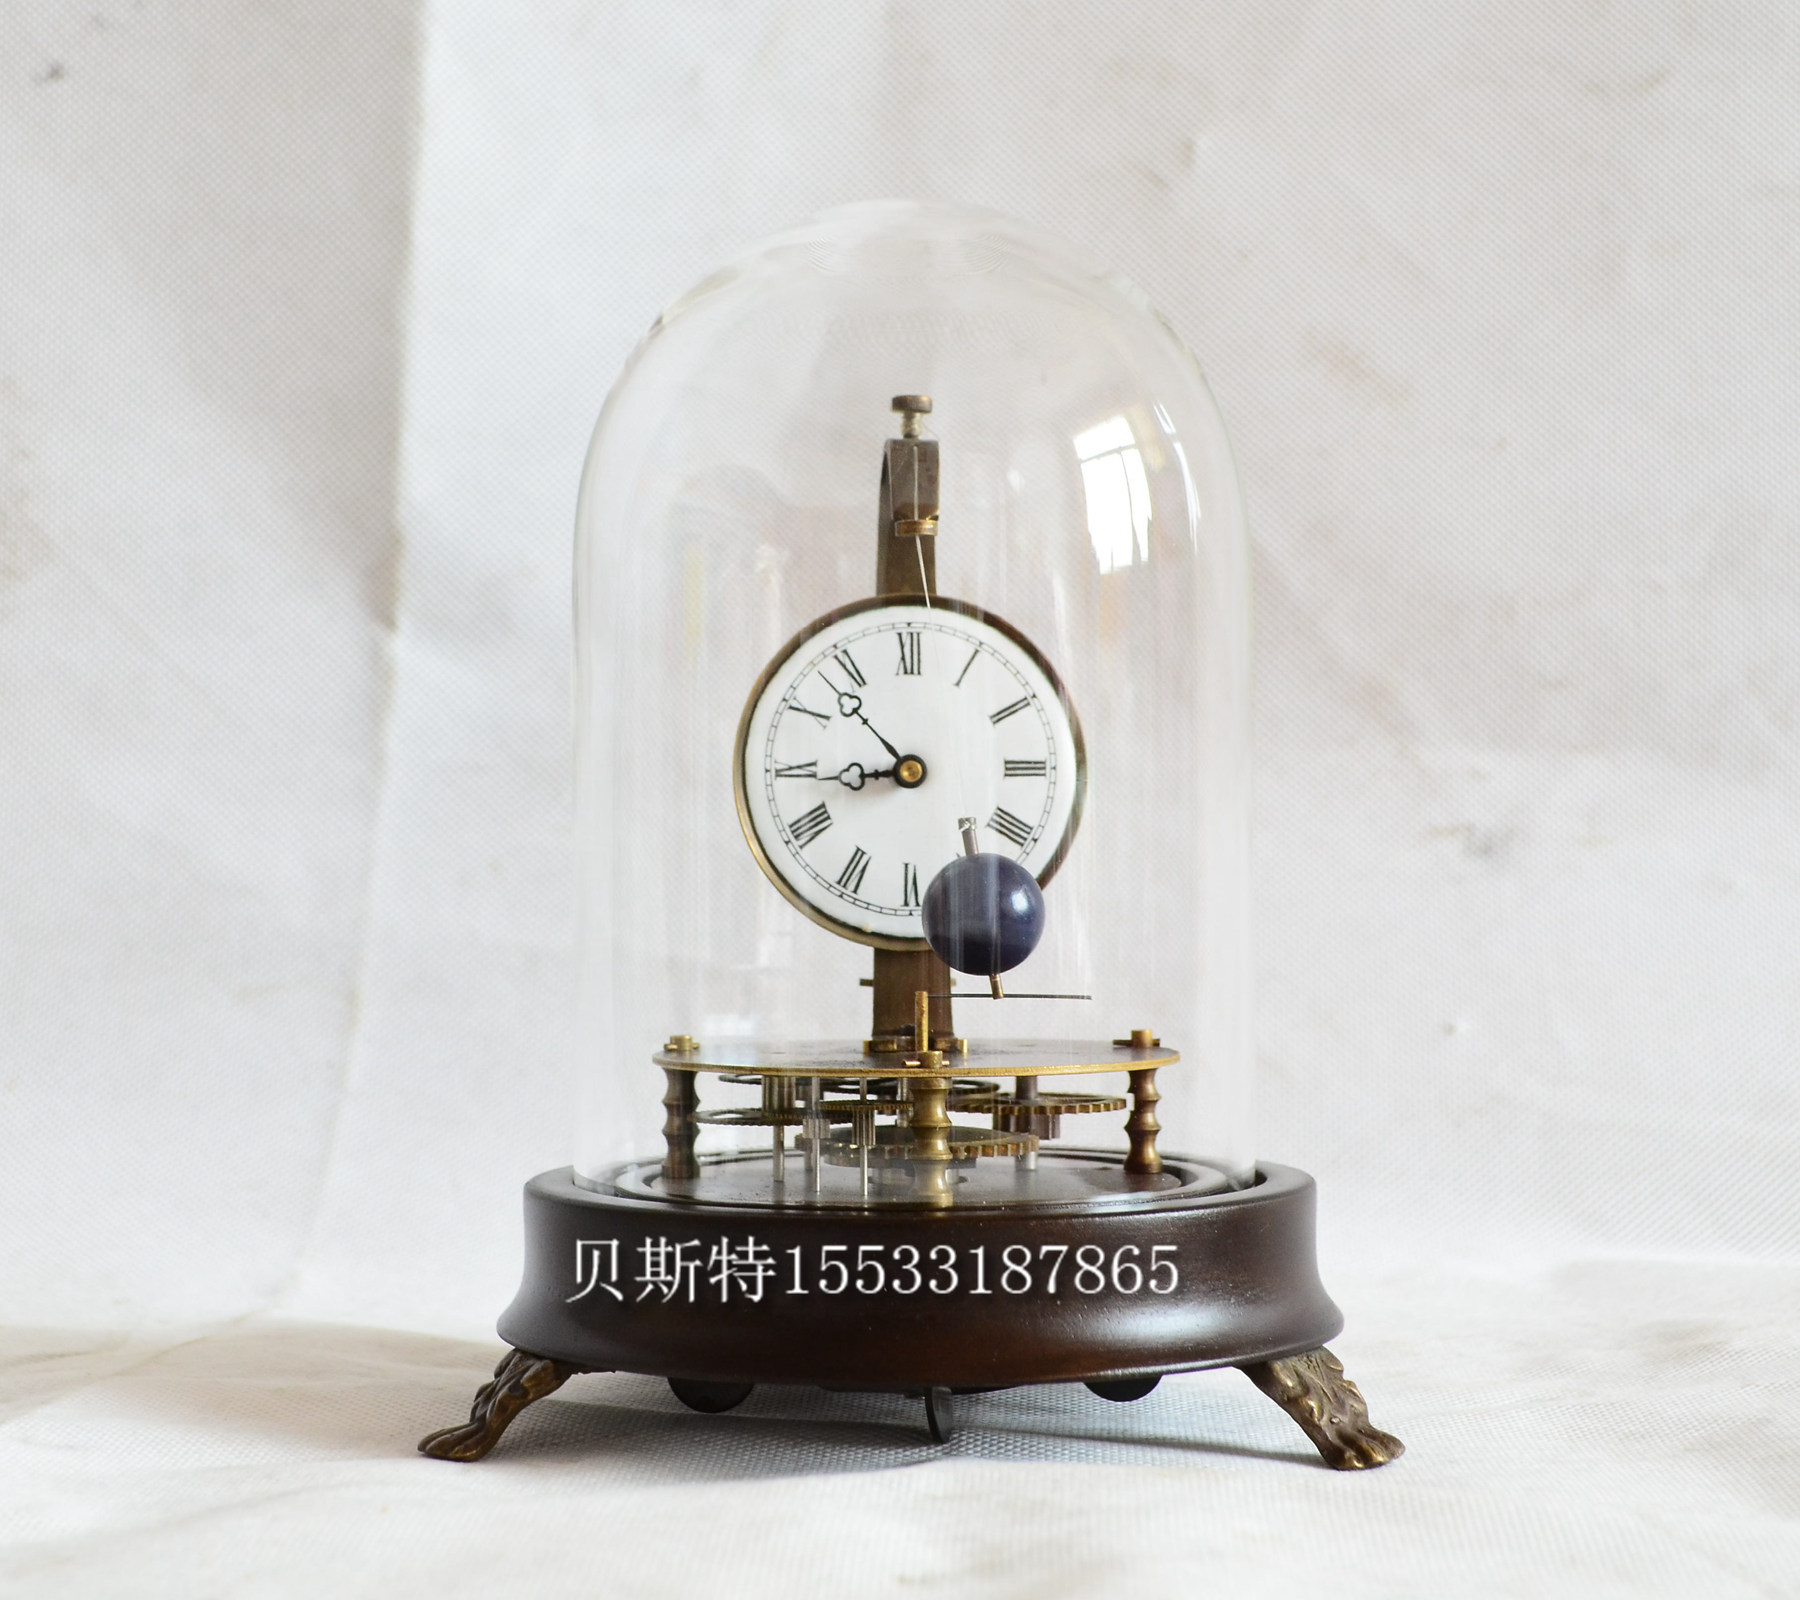 绕球骨架钟表仿古机械玻璃罩透视齿轮骨架座钟趣味动态家居创意钟